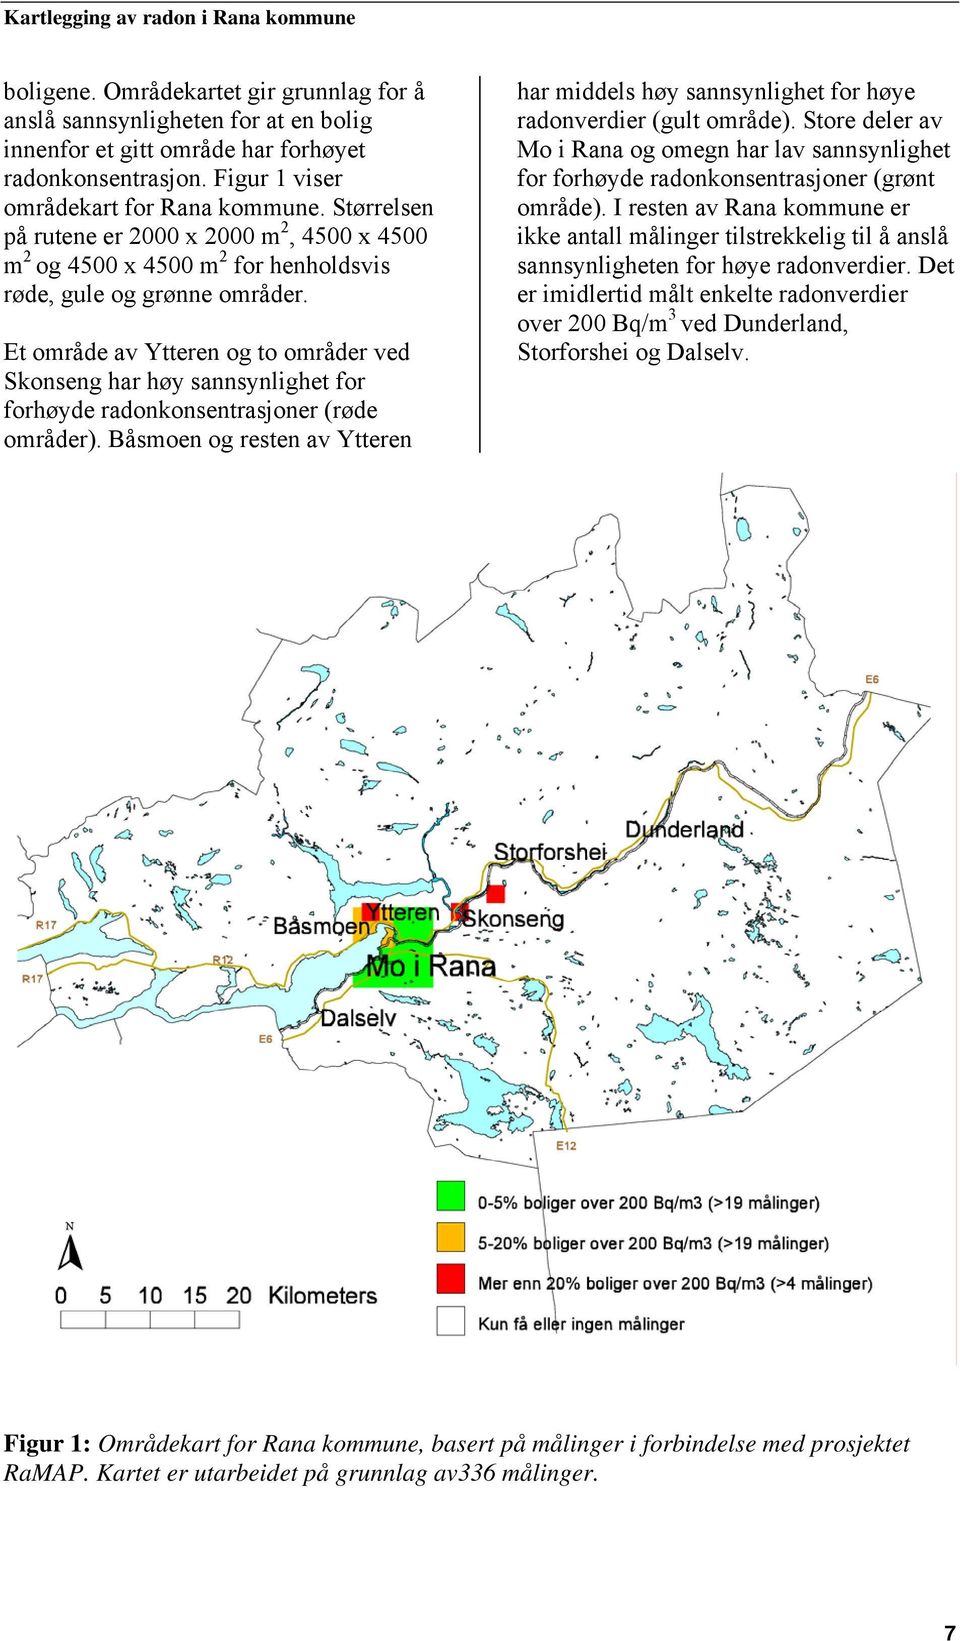 Et område av Ytteren og to områder ved Skonseng har høy sannsynlighet for forhøyde radonkonsentrasjoner (røde områder).